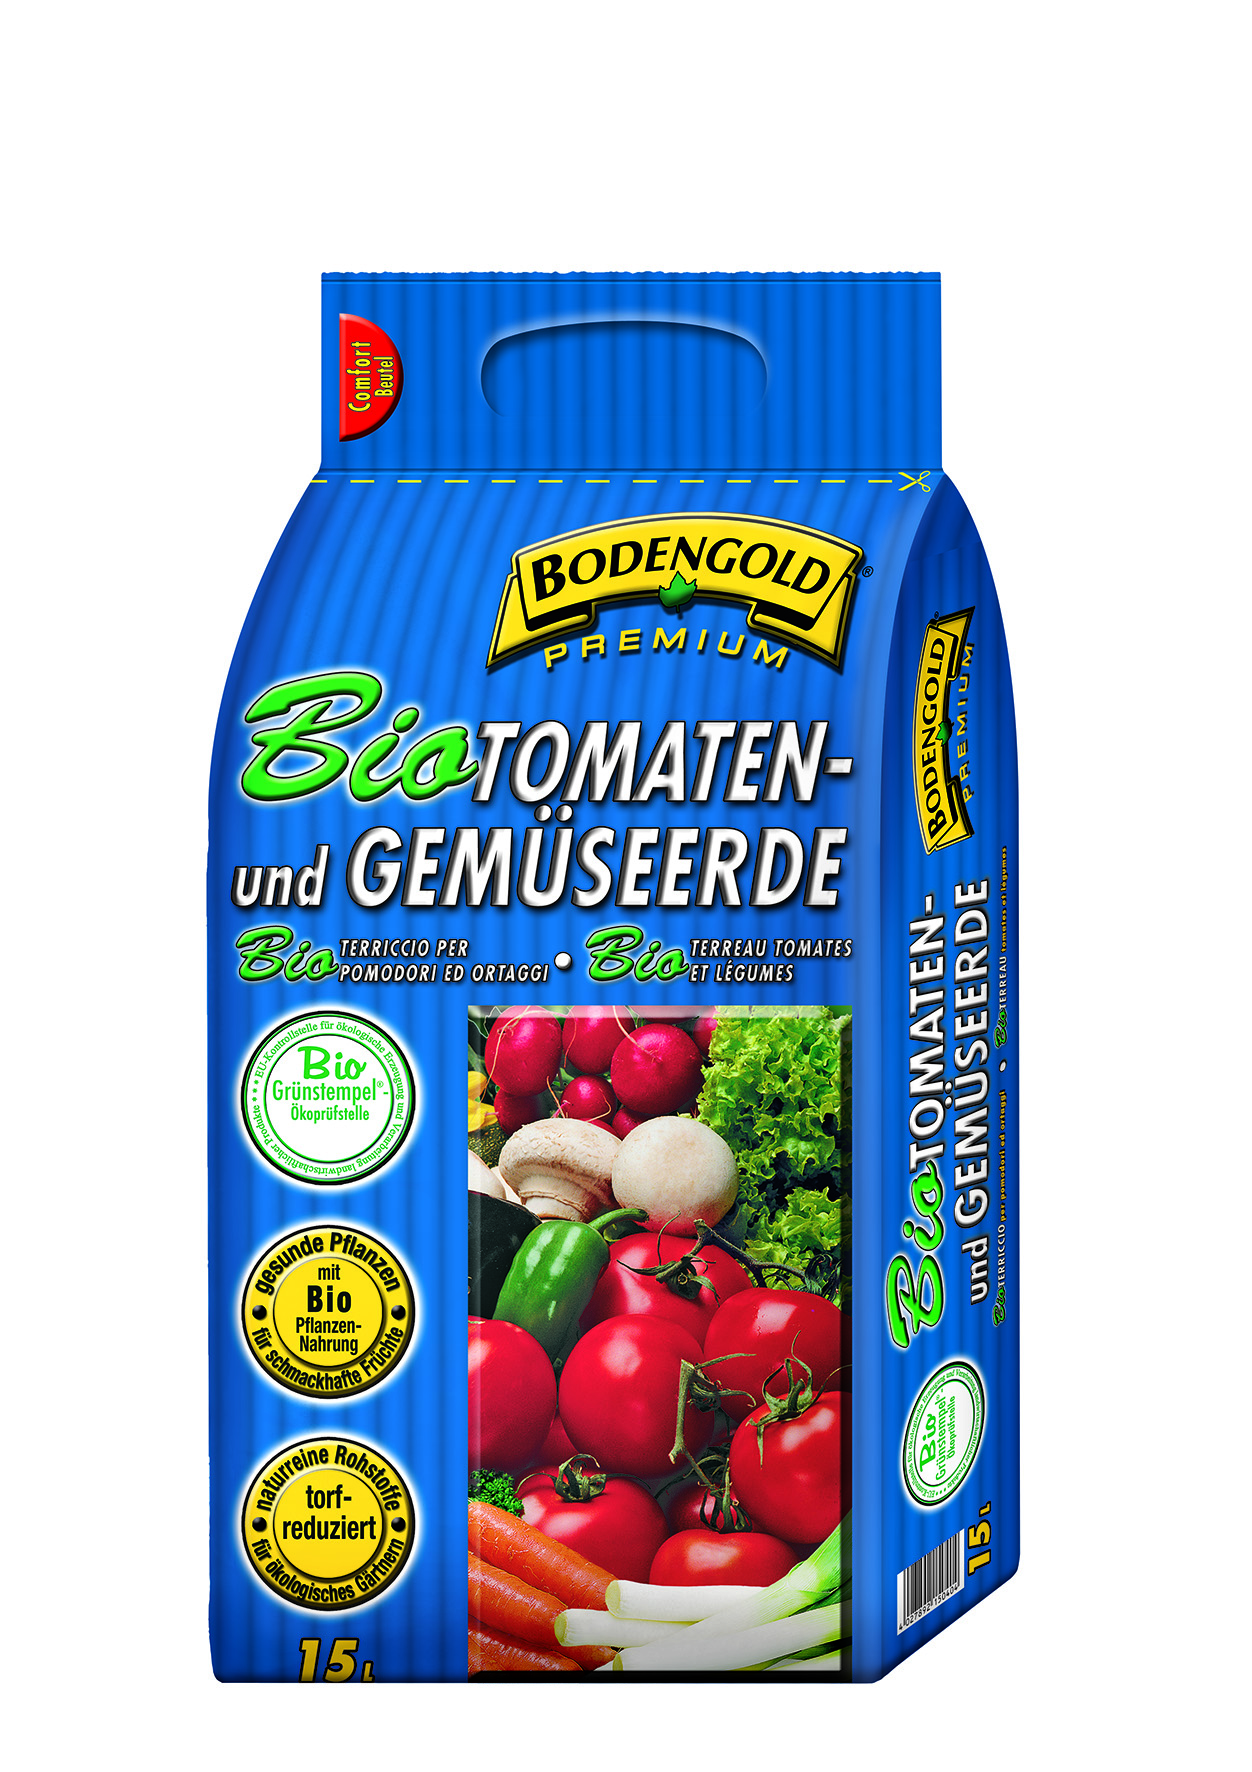 ZL OST Bodengold BIO-Tomaten-Gemüseerde 15l Zertifiziert d.EU Kontrollstelle Grünst.